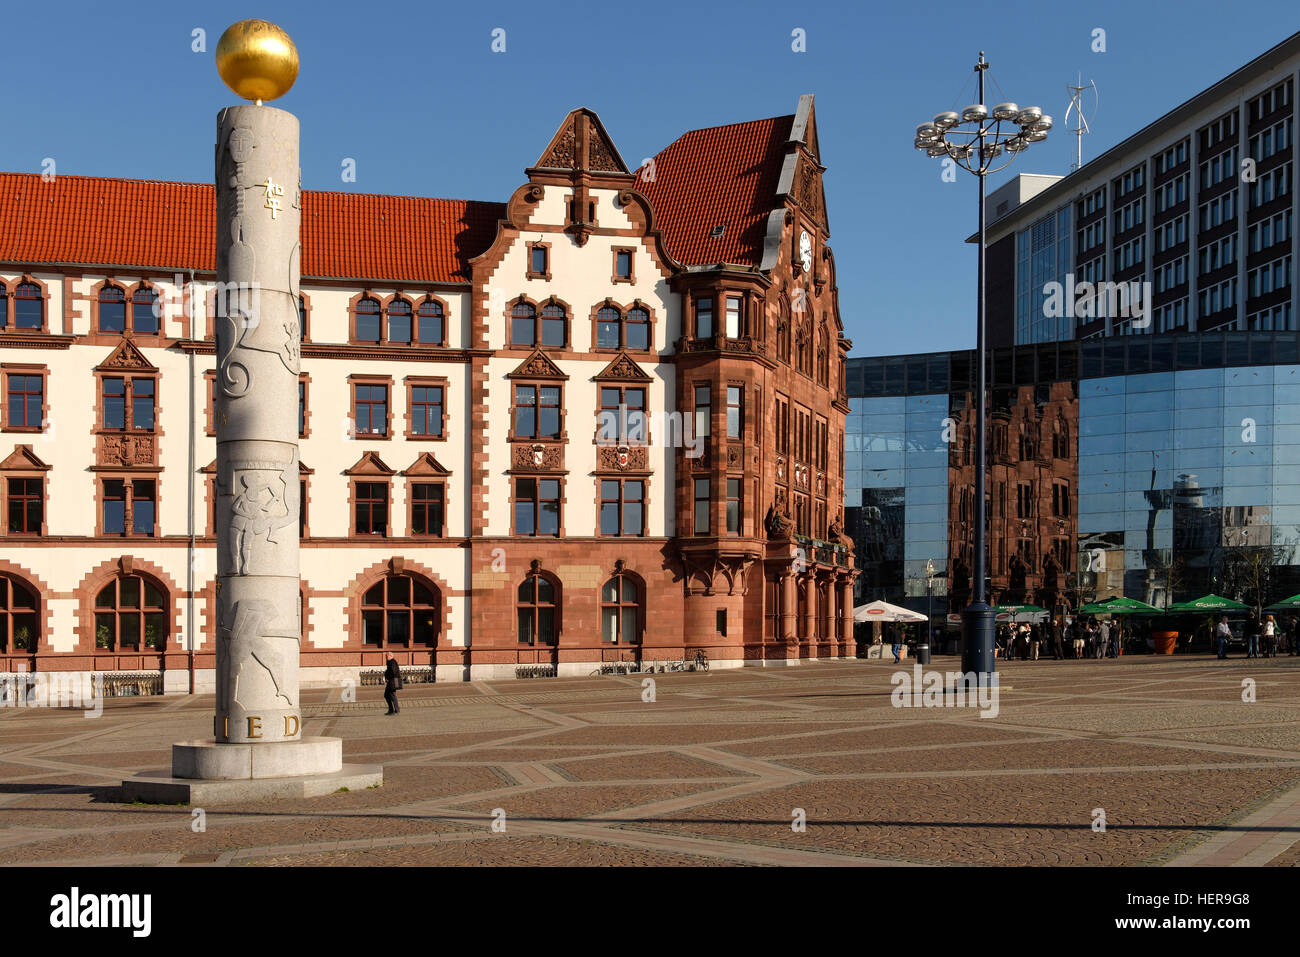 Friedensplatz mit Altem Stadthaus und Friedenssäule von Bildhauerin Susanne Wehland in Dortmund, Nordrhein-Westfalen, Deutschland Stock Photo